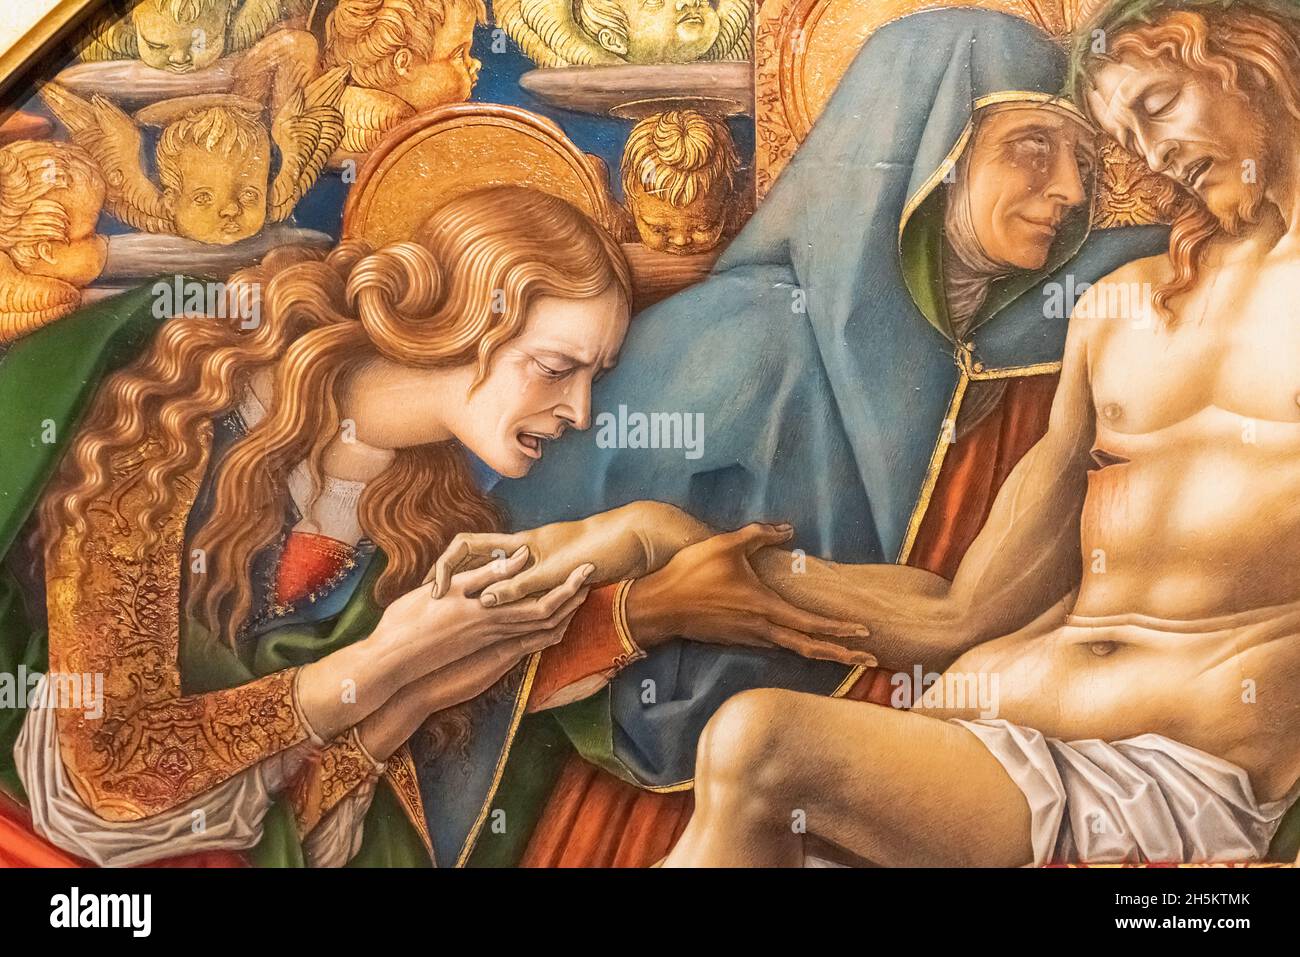 Detalle de la pintura religiosa medieval que muestra a la Virgen María y María Magdalena llorando sobre el cuerpo muerto de Jesús Foto de stock